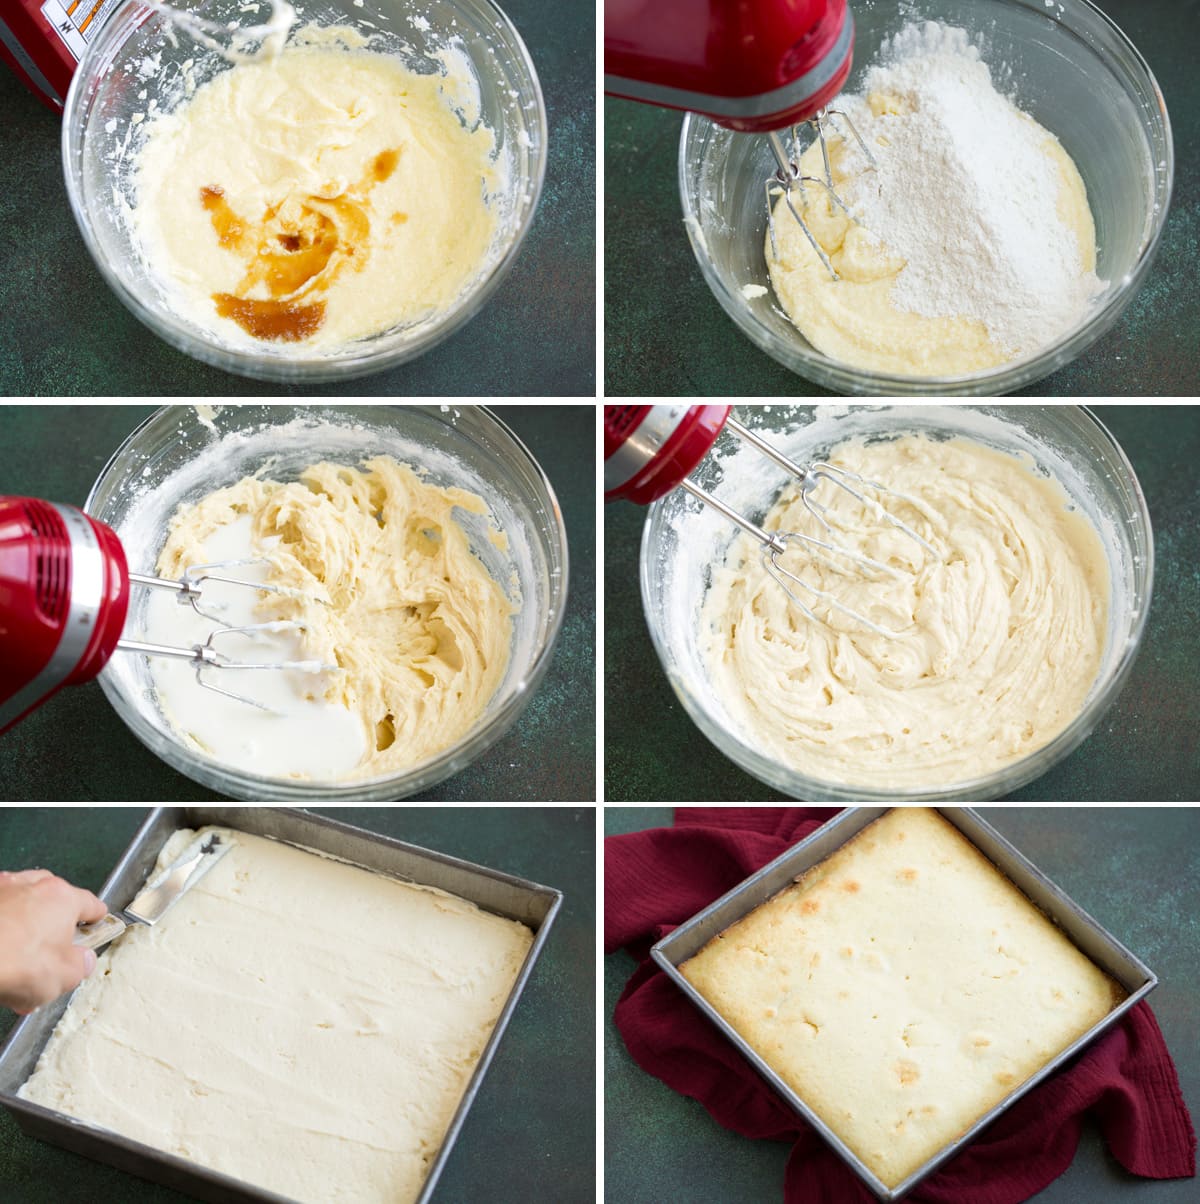 Image showing steps how to make apple upside down cake batter.